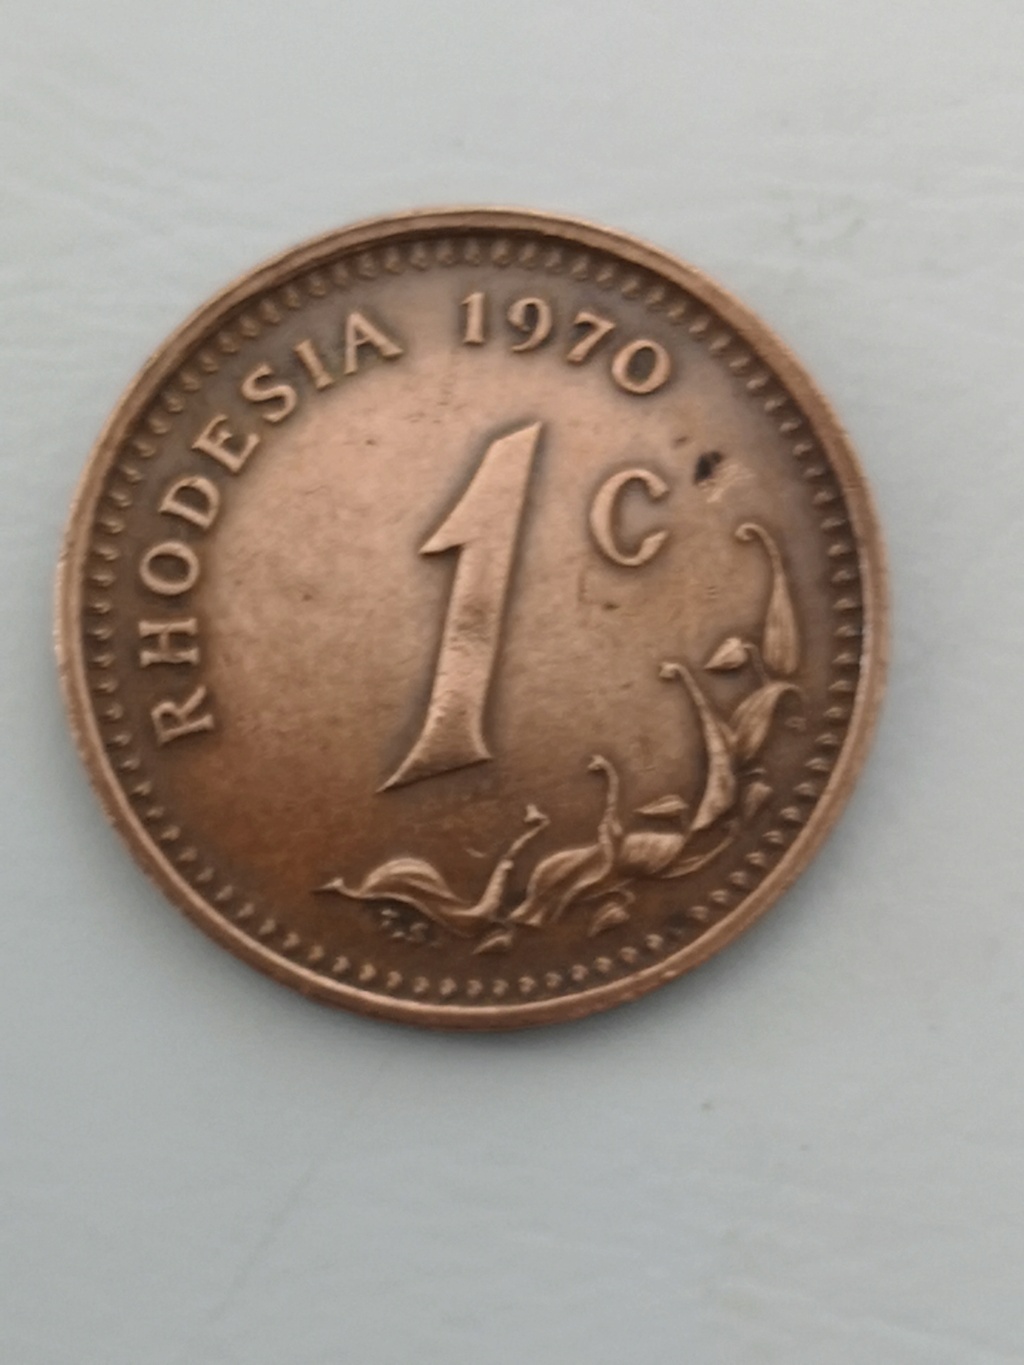 1 céntimo Rhodesia 1970 15979110